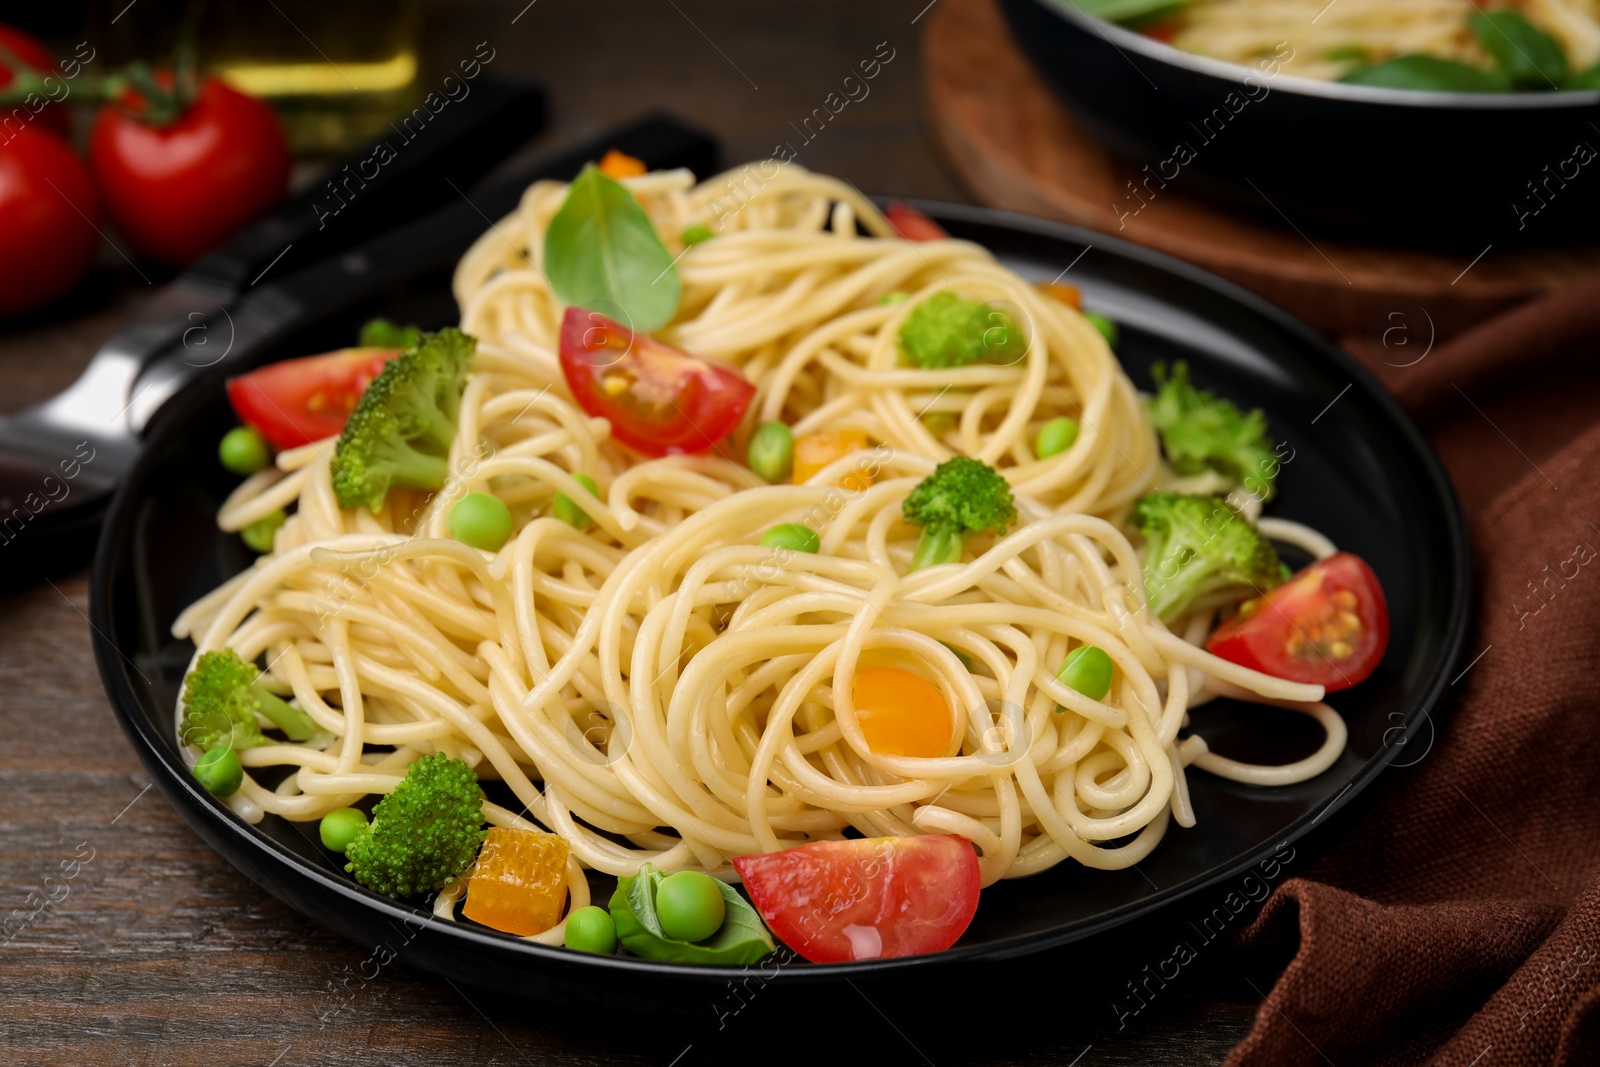 Photo of Plate of delicious pasta primavera, closeup view